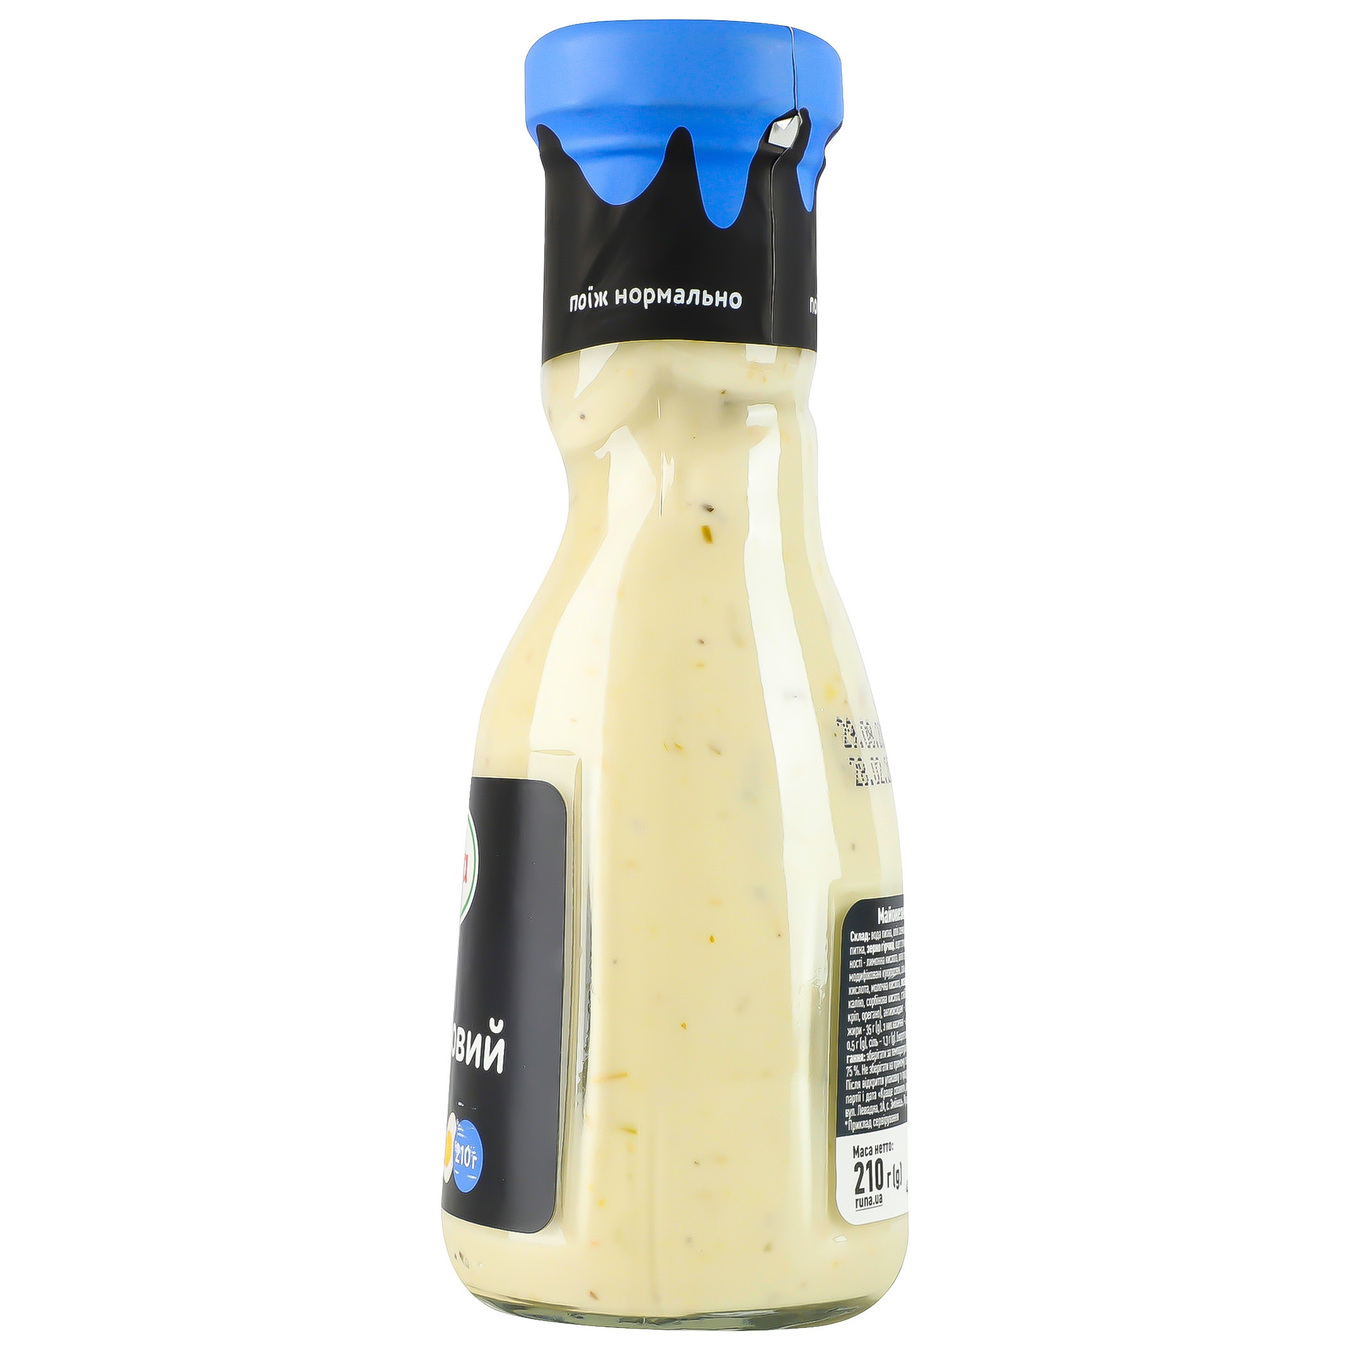 Runa mayonnaise garlic sauce sterilized 235g 9